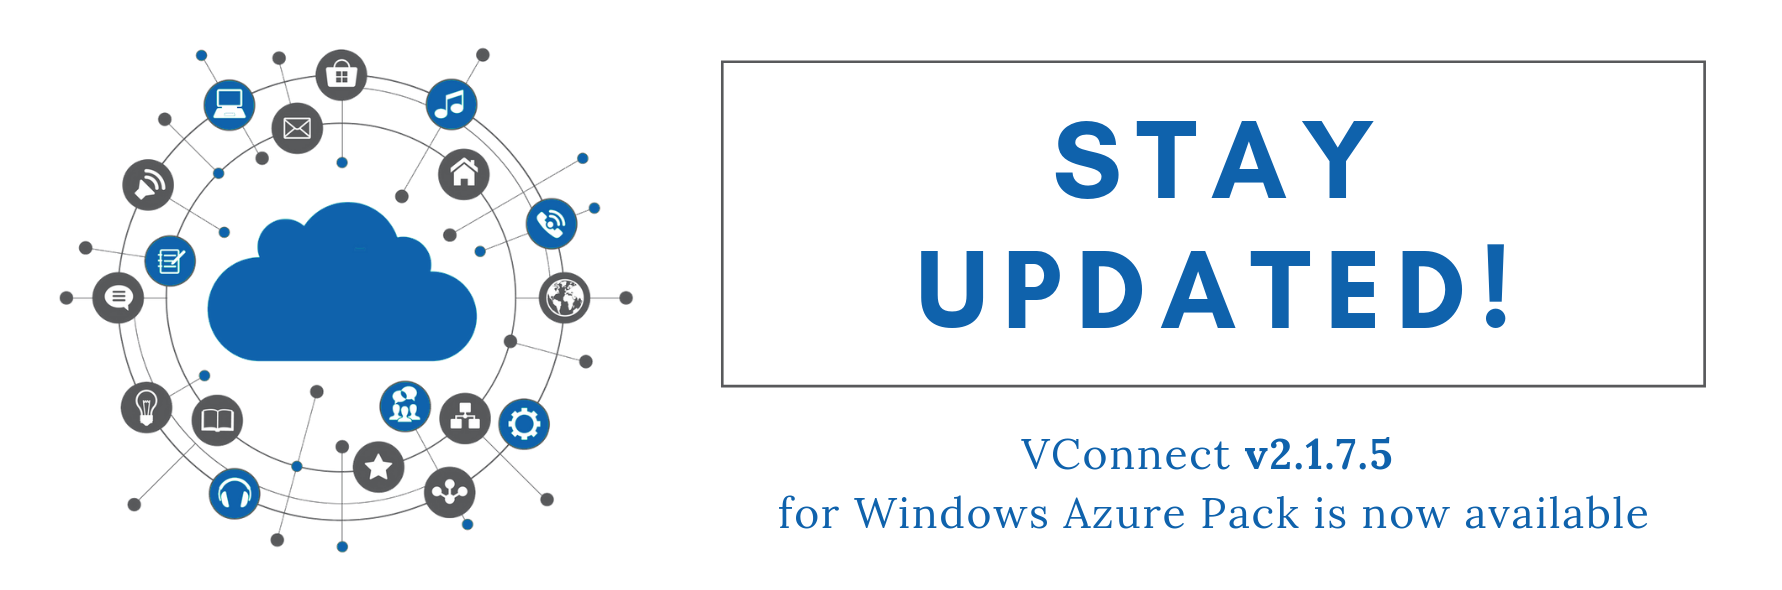 VConnect v2.1.7.5 for Windows Azure Pack